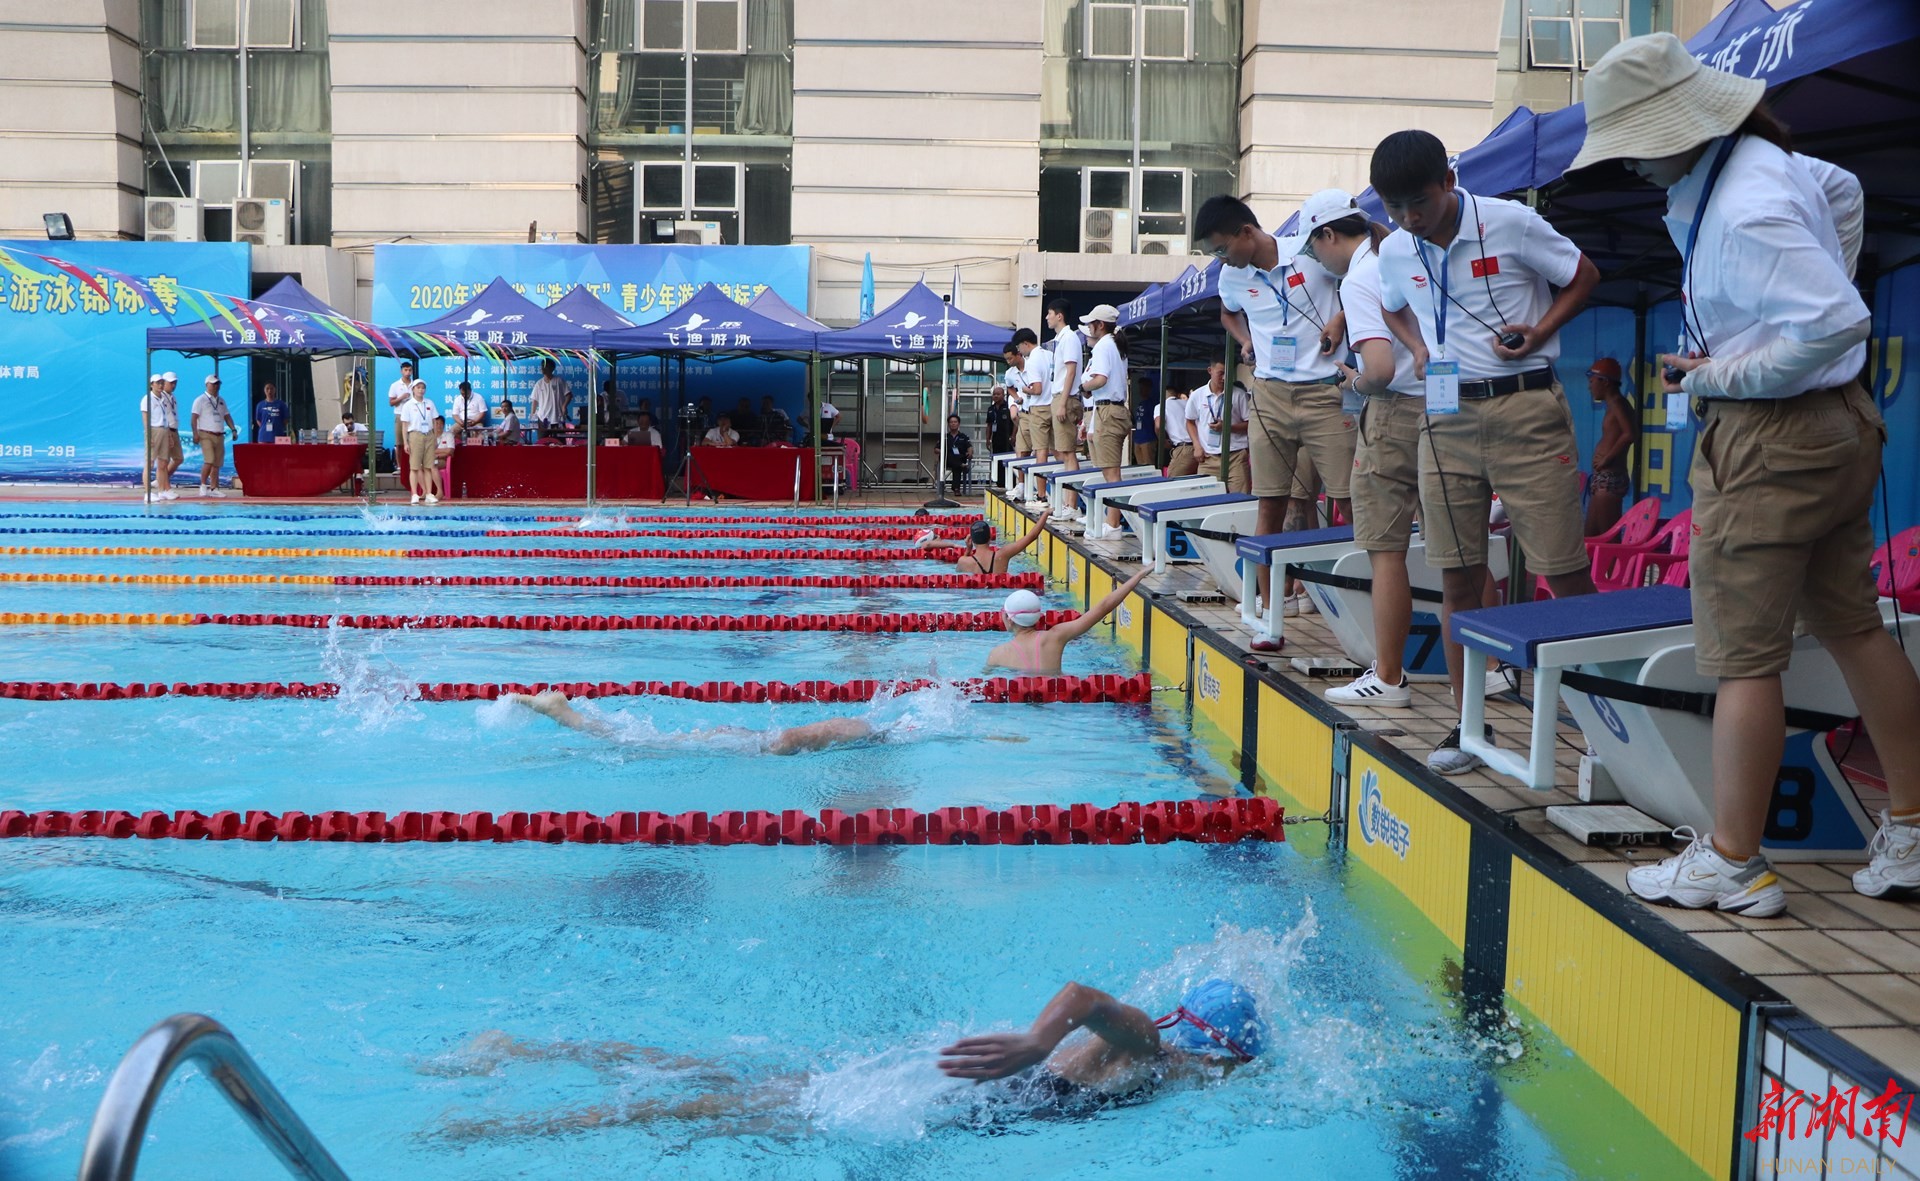 我校游泳队参加第三届中国大学生阳光游泳比赛获佳绩-广州大学新闻网